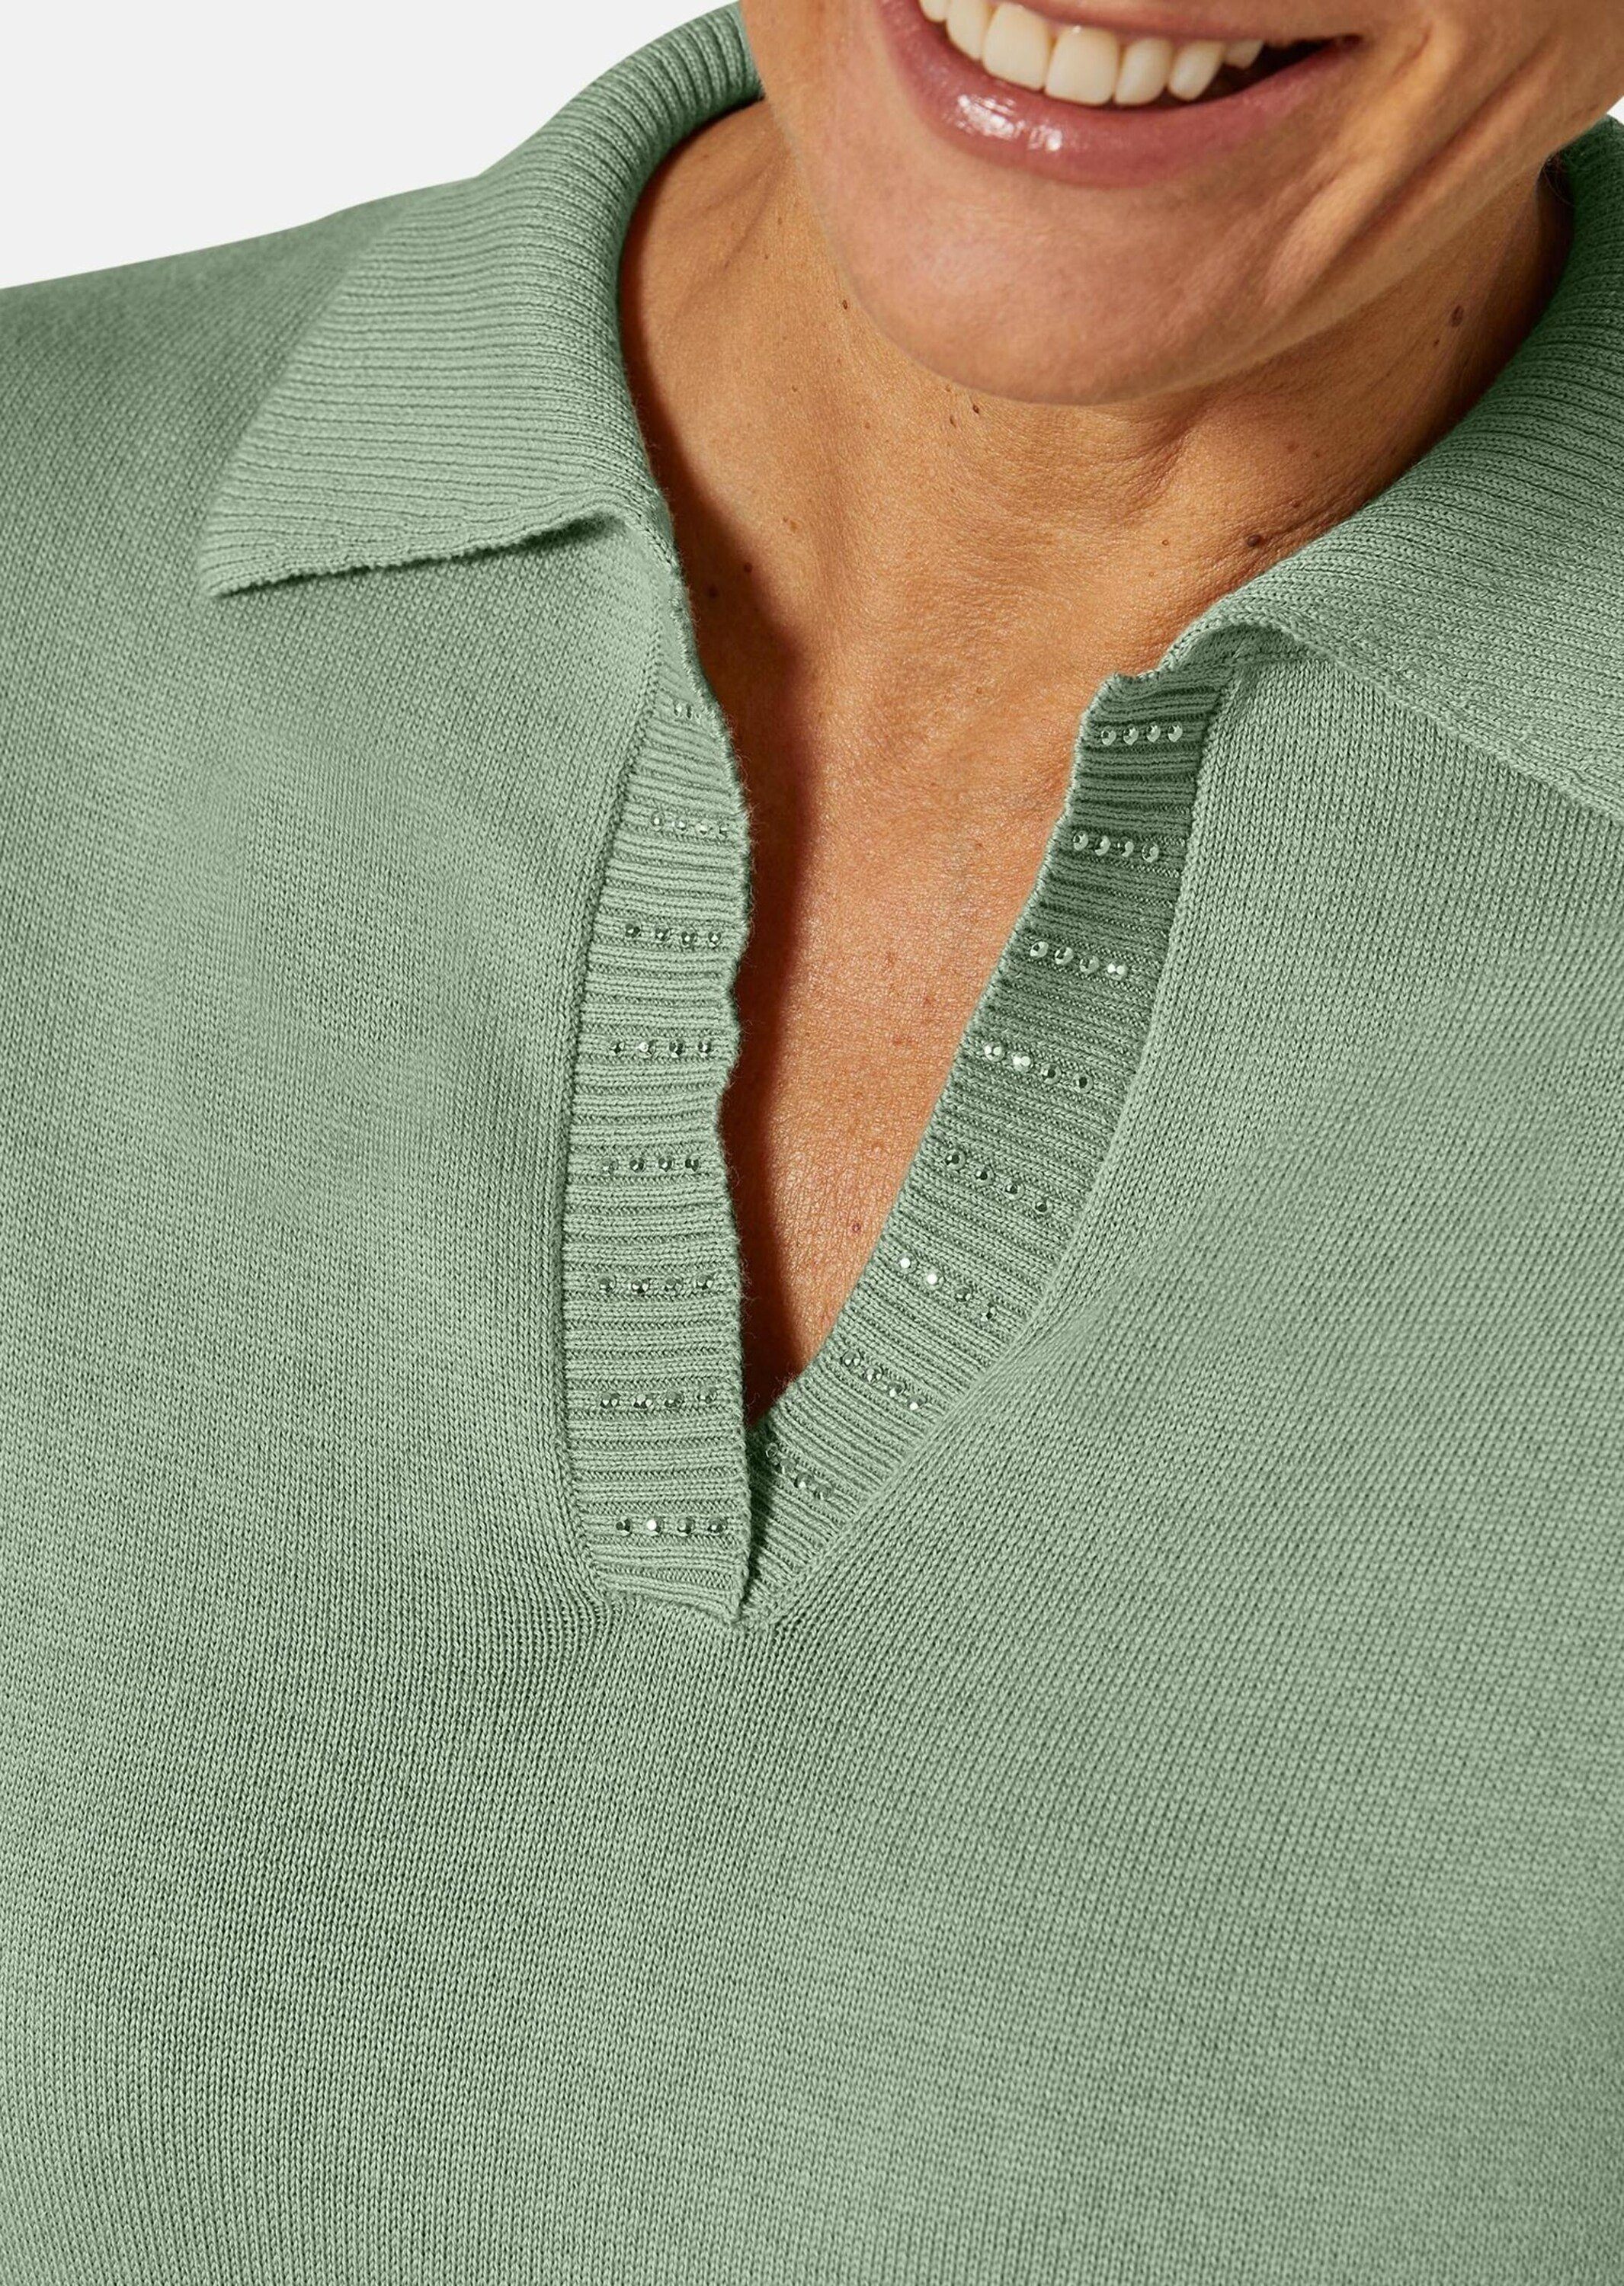 Strickpullover Pullover hochwertigem Kurzgröße: baummoos Garn aus GOLDNER